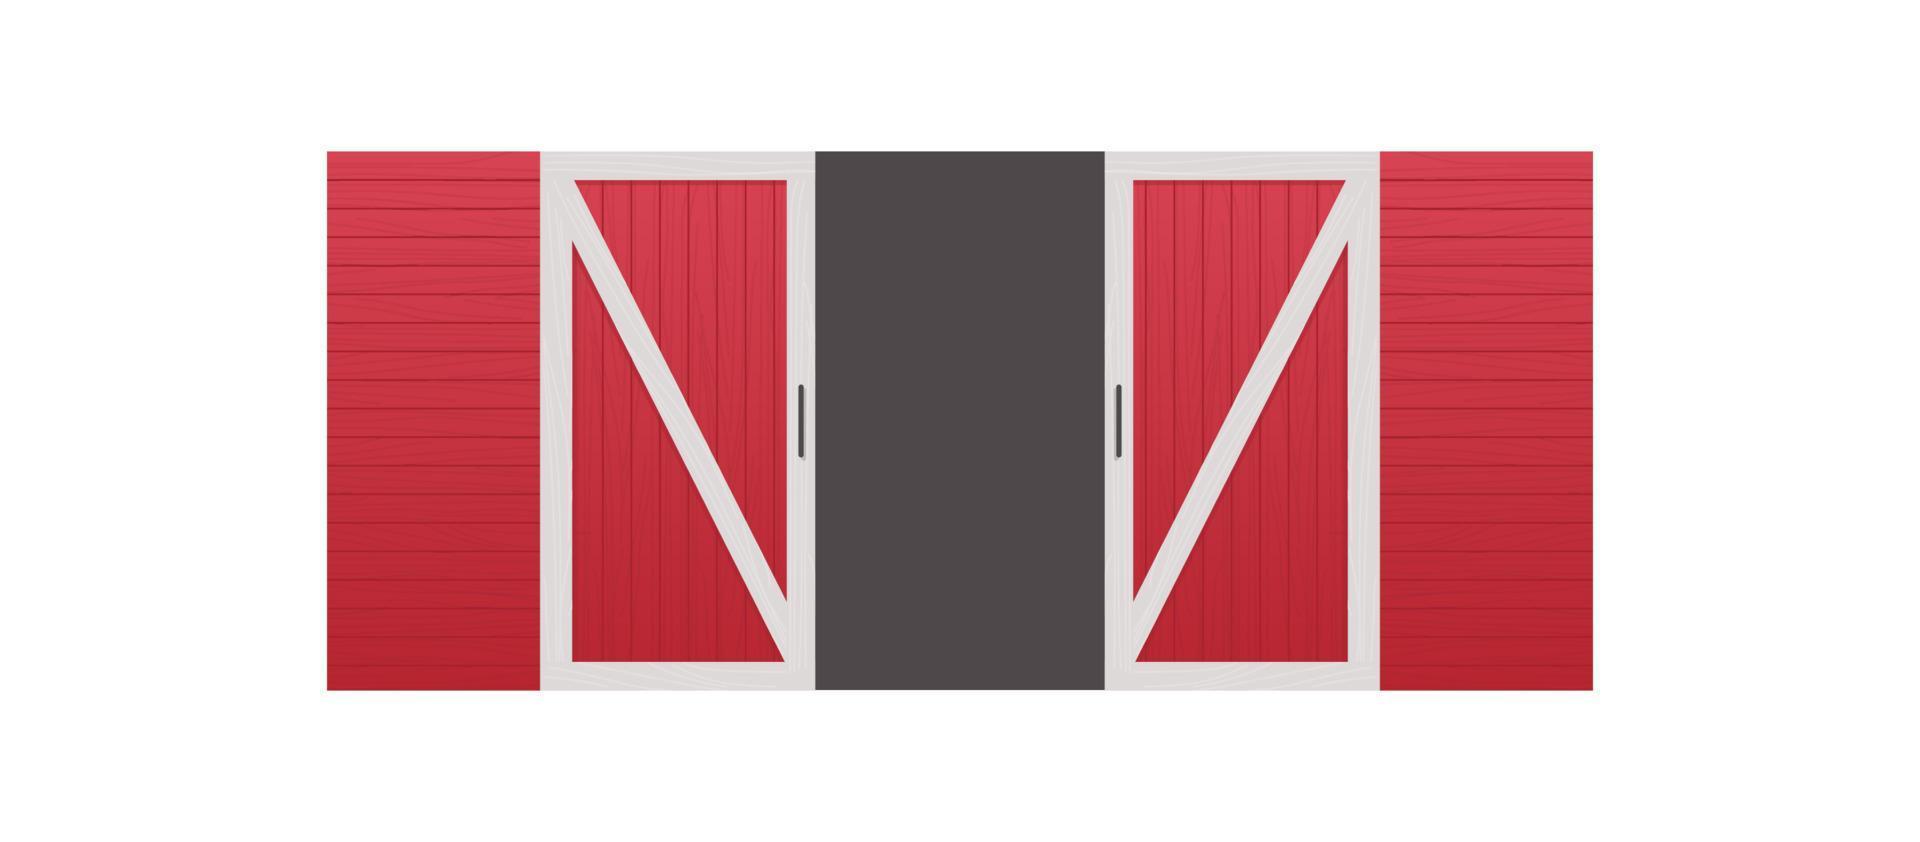 vista frontal da porta do celeiro de madeira vermelha e ilustração em vetor plano horizontal do conceito de construção do armazém da fazenda.